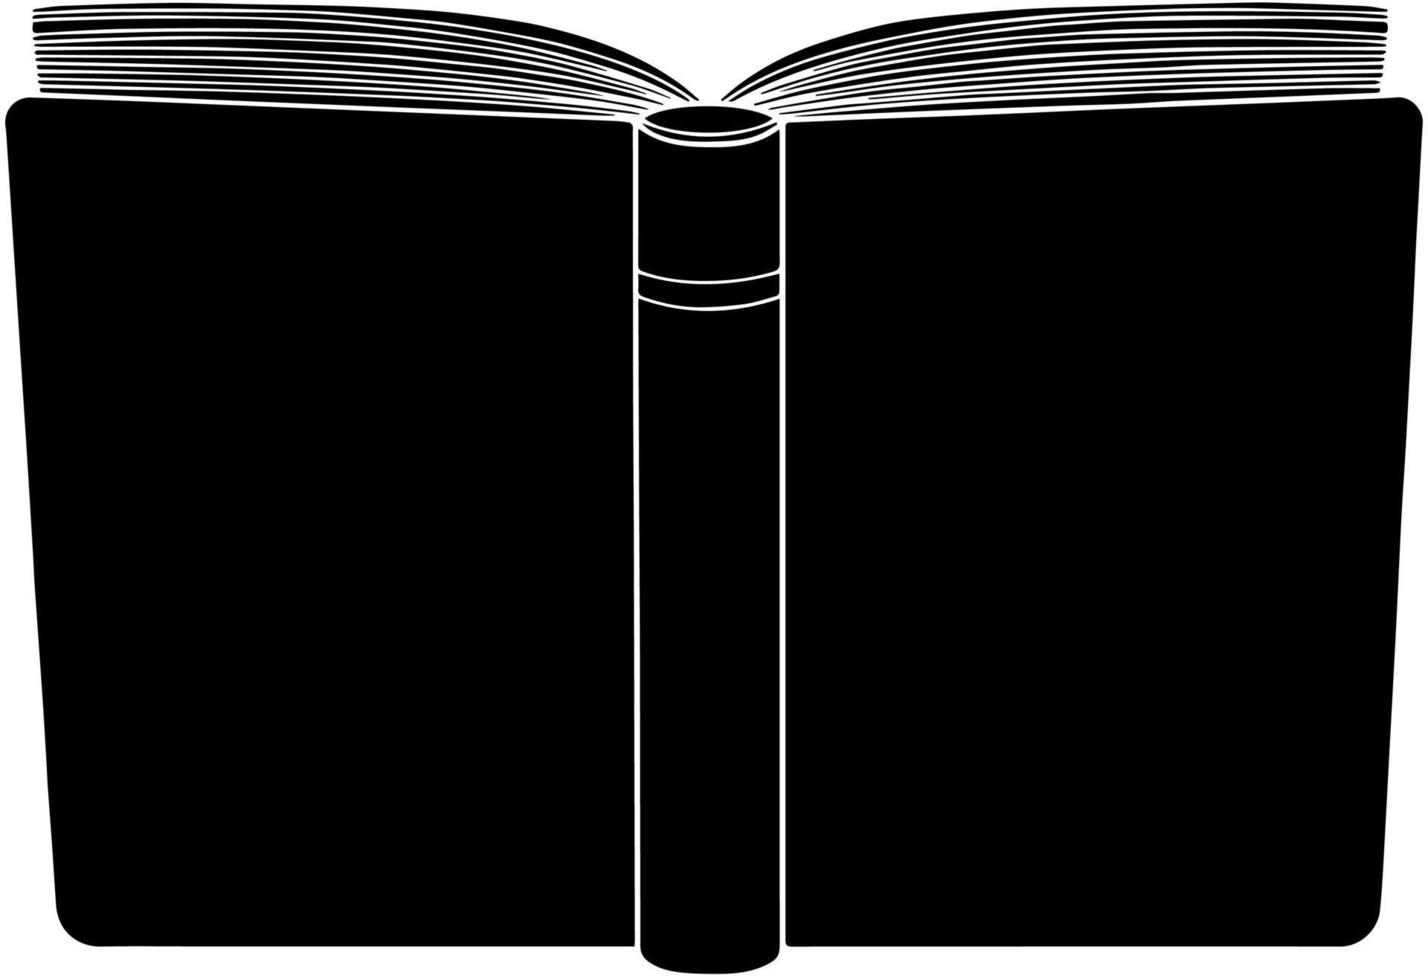 öppen bok isolerade vektor handritad illustration. svart kontur siluett läsning